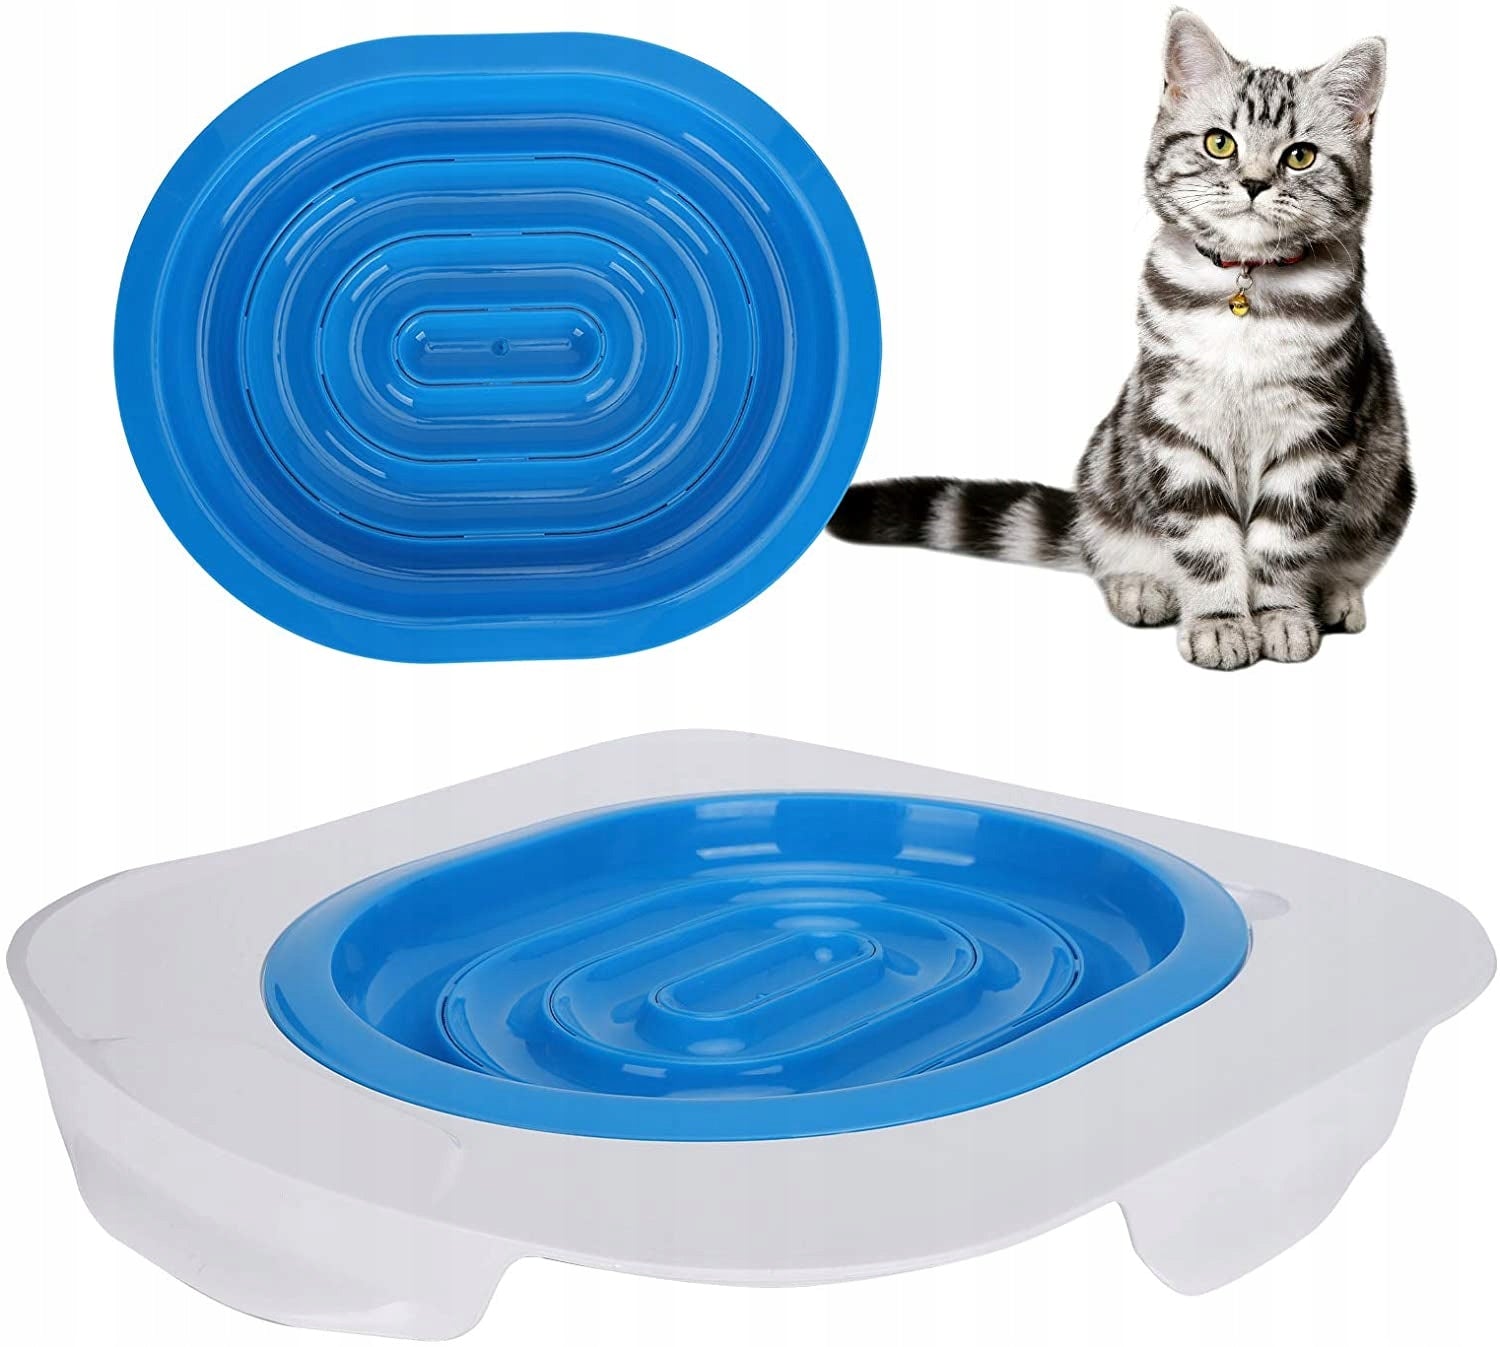 Toalettsete for kattetrening - kattedo med kattesand